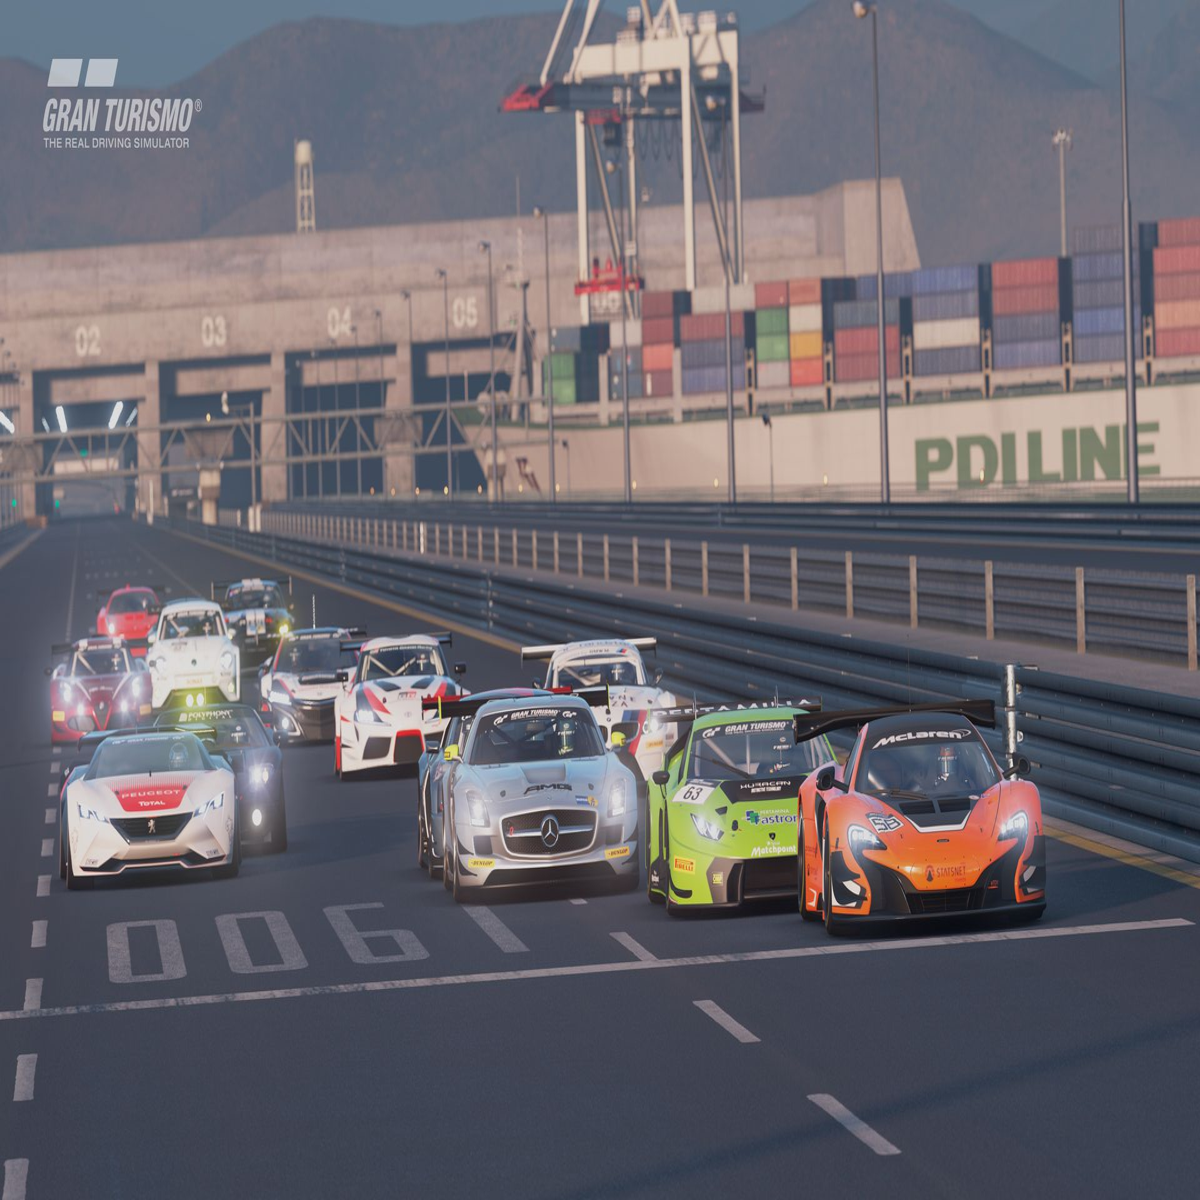 A atualização 1.32 de Gran Turismo 7 chega hoje com quatro carros